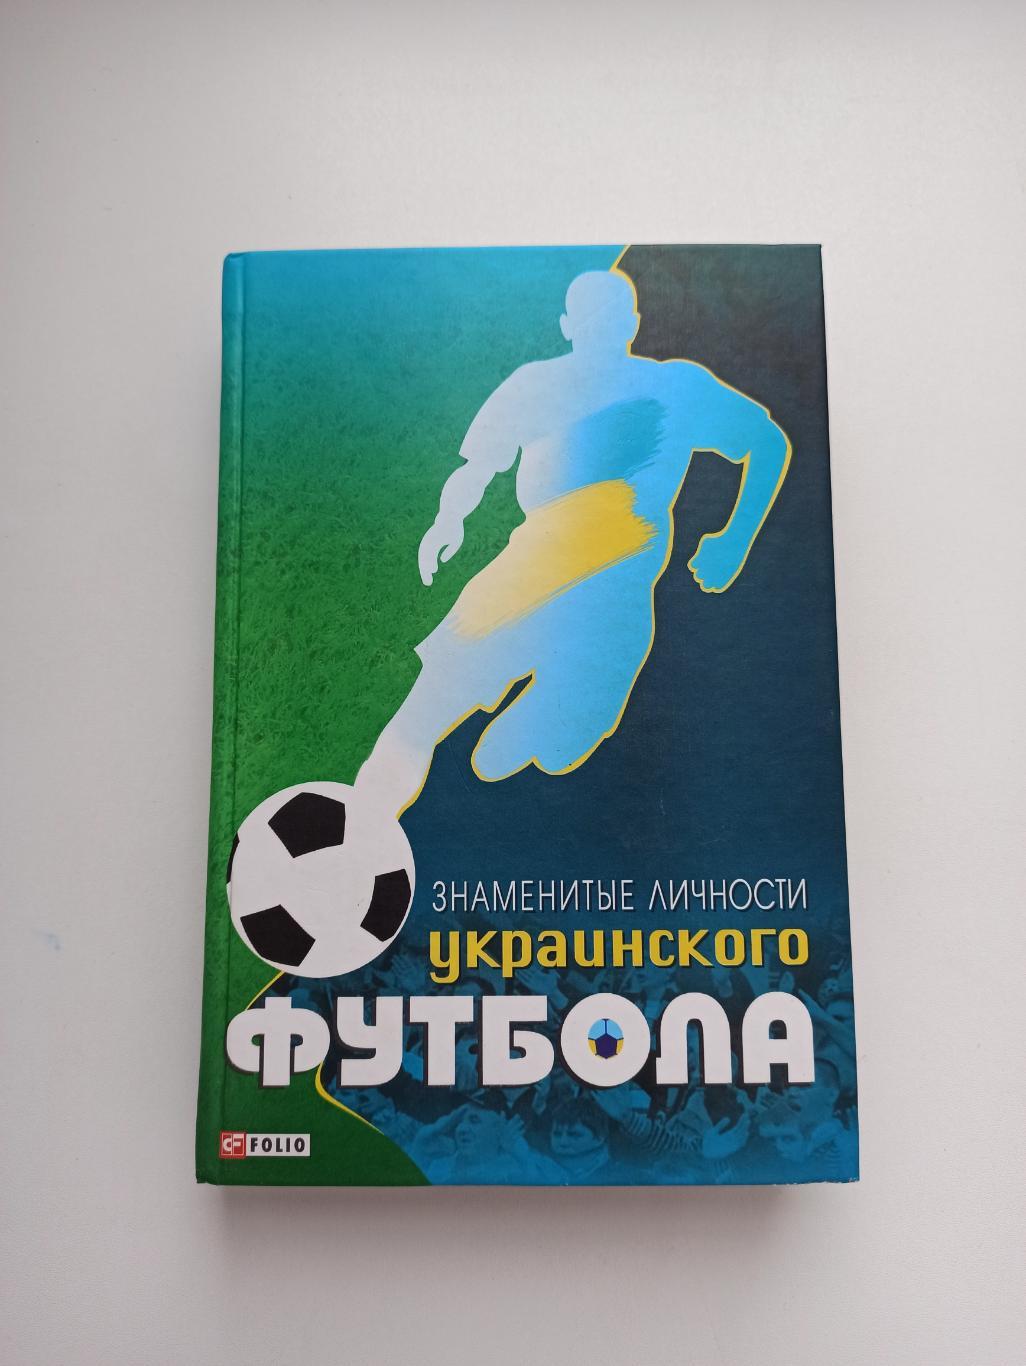 Футбол, Знаменитые личности украинского футбола, Харьков, на русском языке